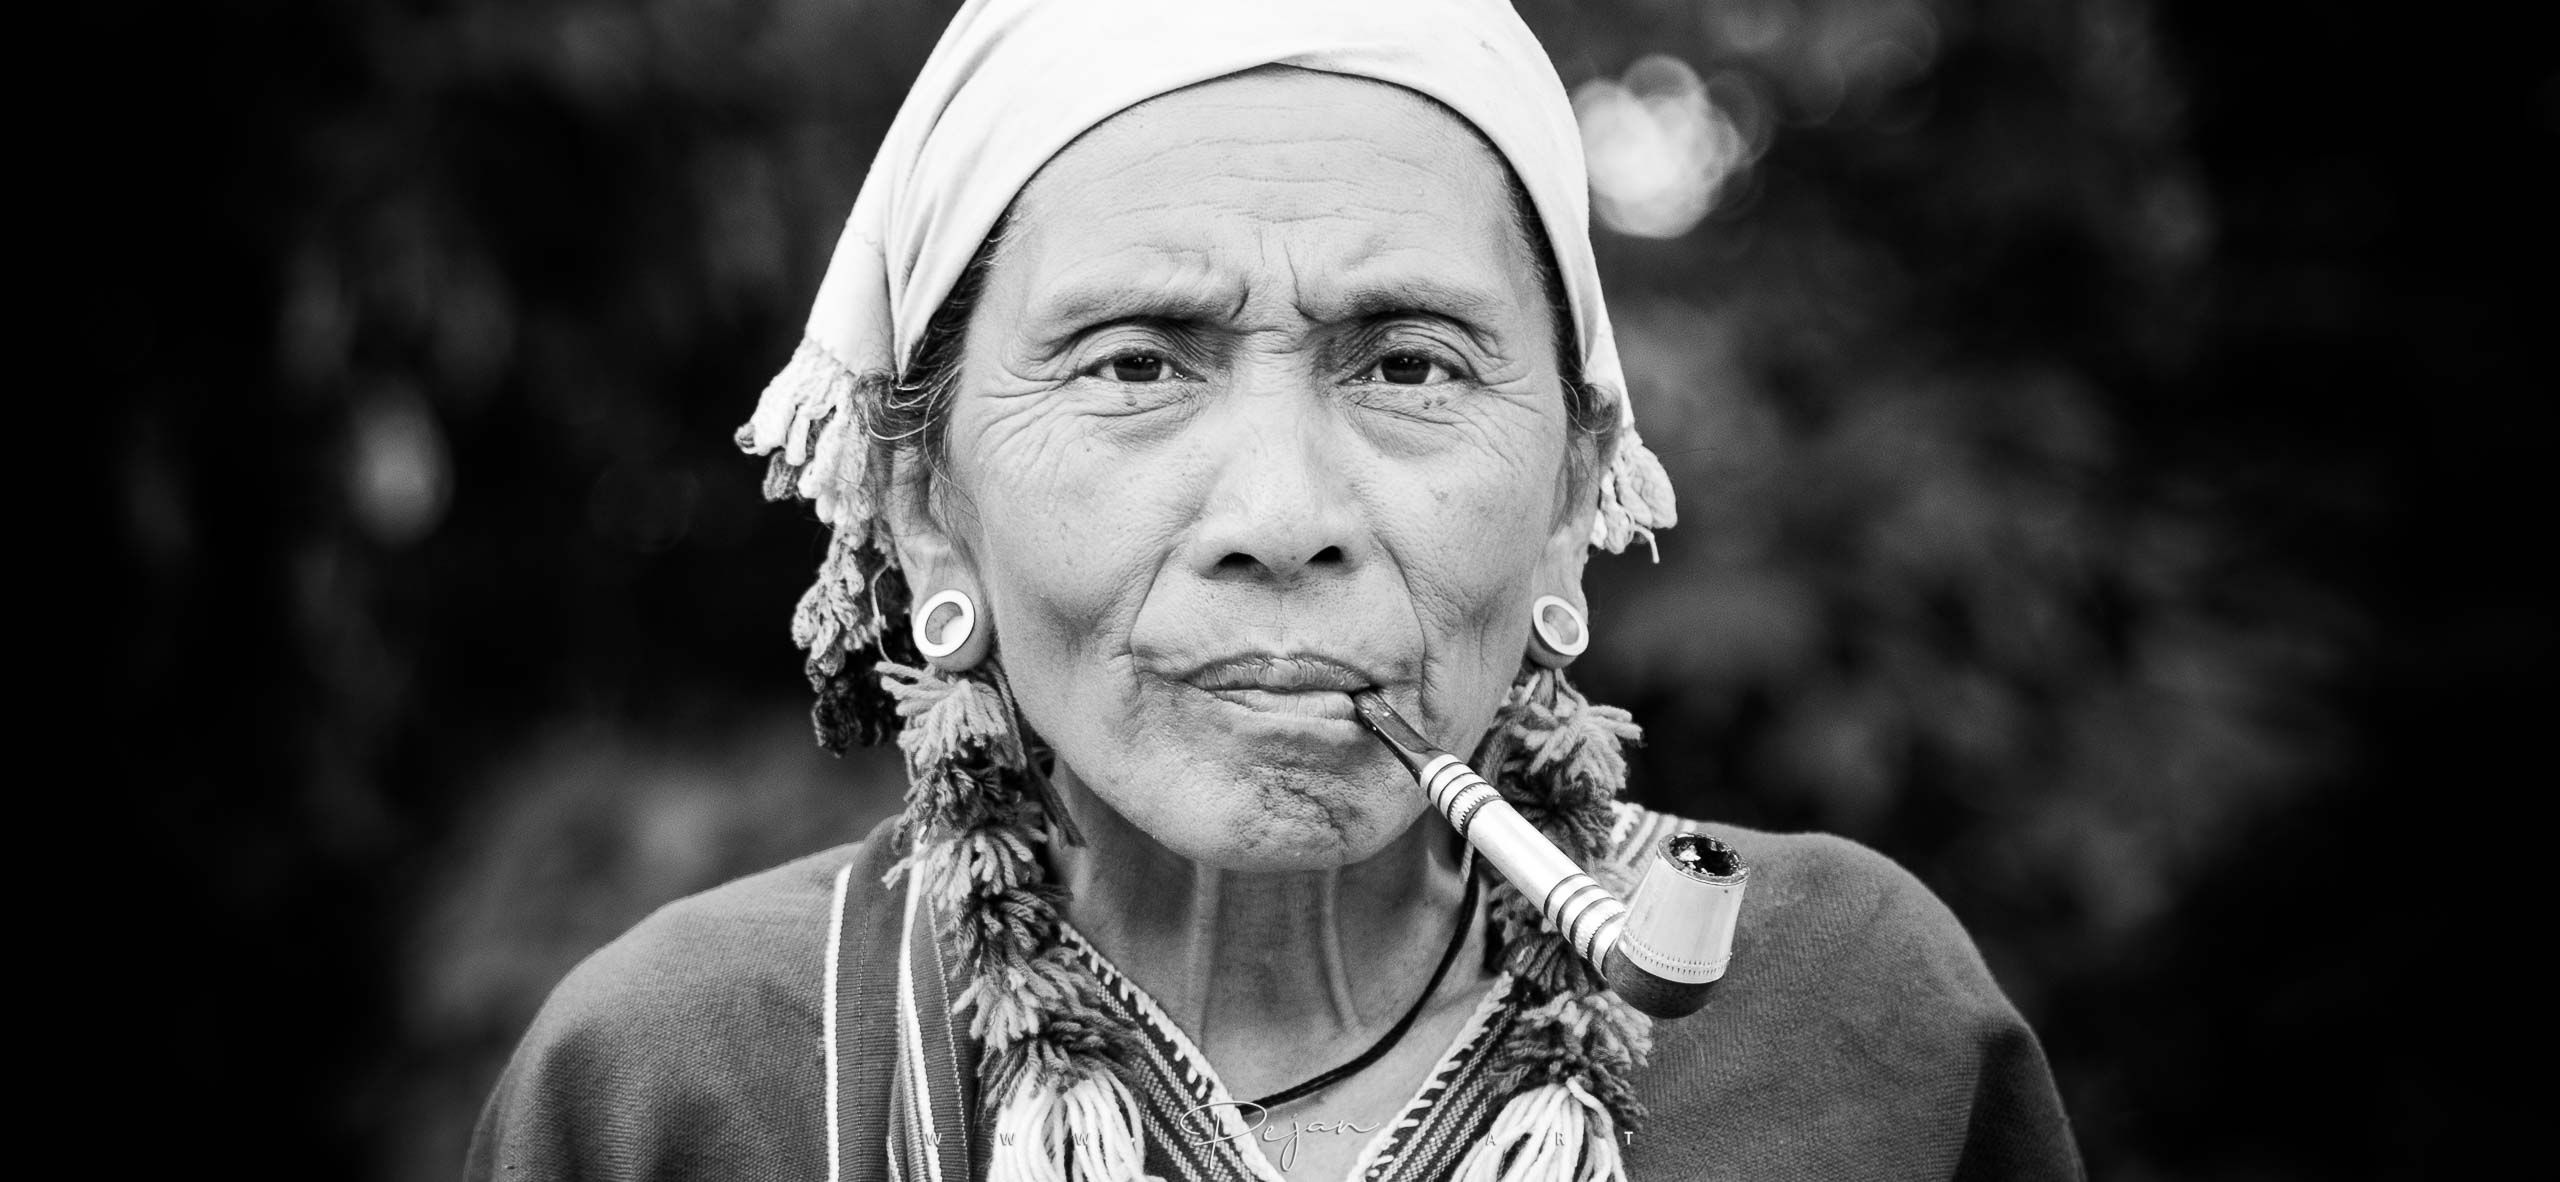 Portrait monochrome d'une femme de l'ethnie Karen rencontrée dans les montagnes en Thaïlande. Elle porte des vêtements et bijoux traditionnels et fume une grande pipe. Elle regarde l'objectif.